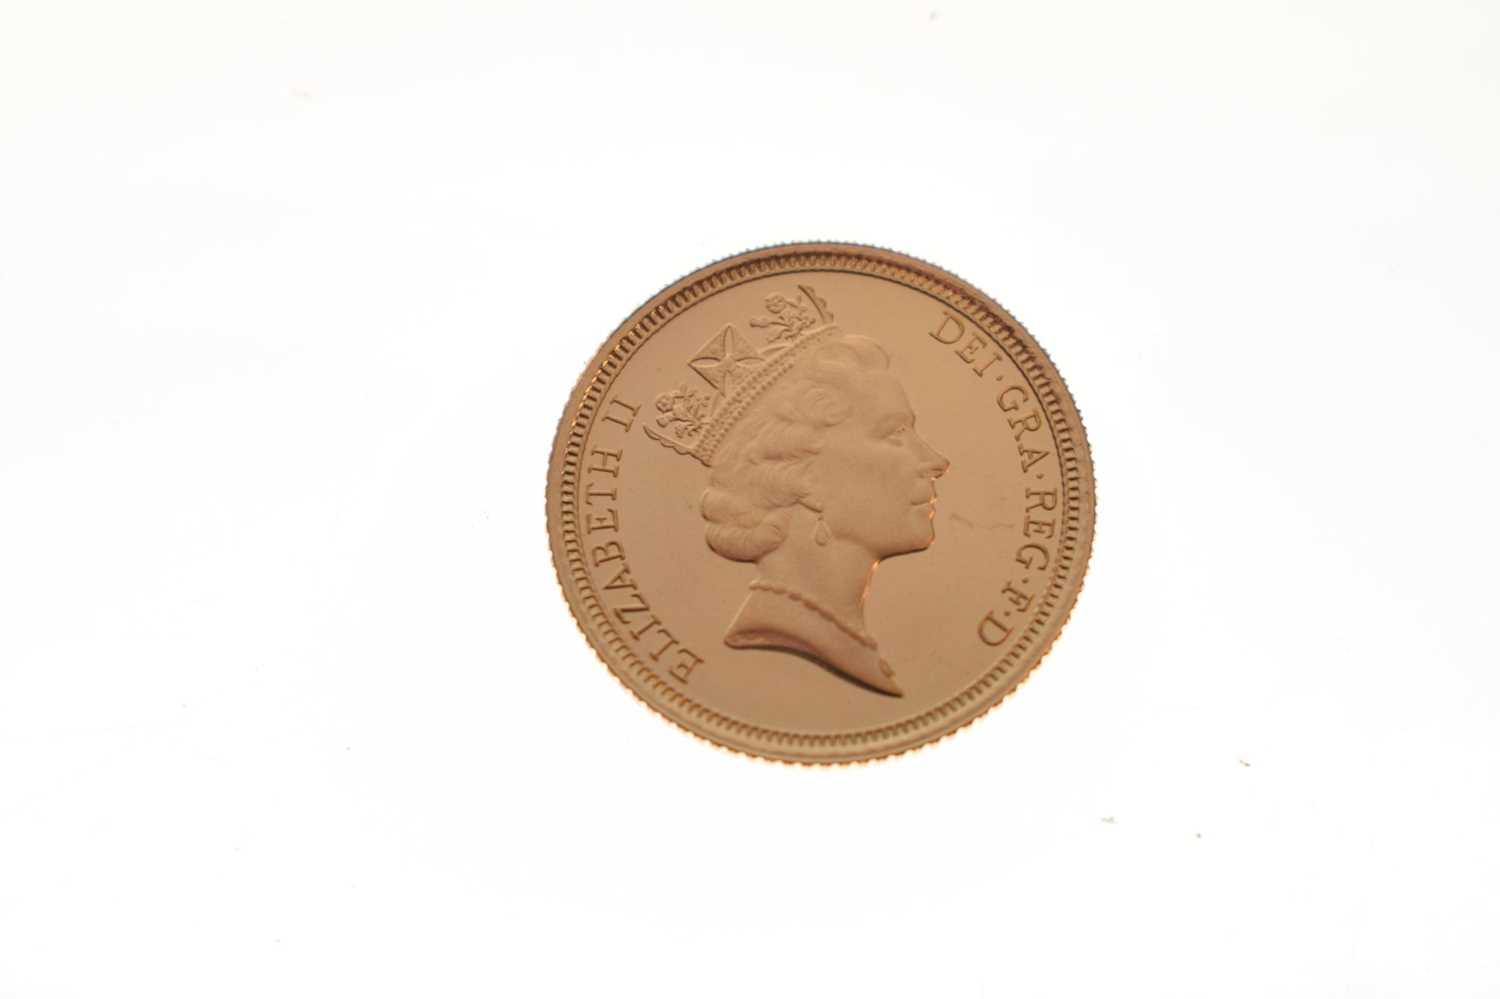 Royal Mint - Elizabeth II proof gold half sovereign, 1993 - Image 3 of 5